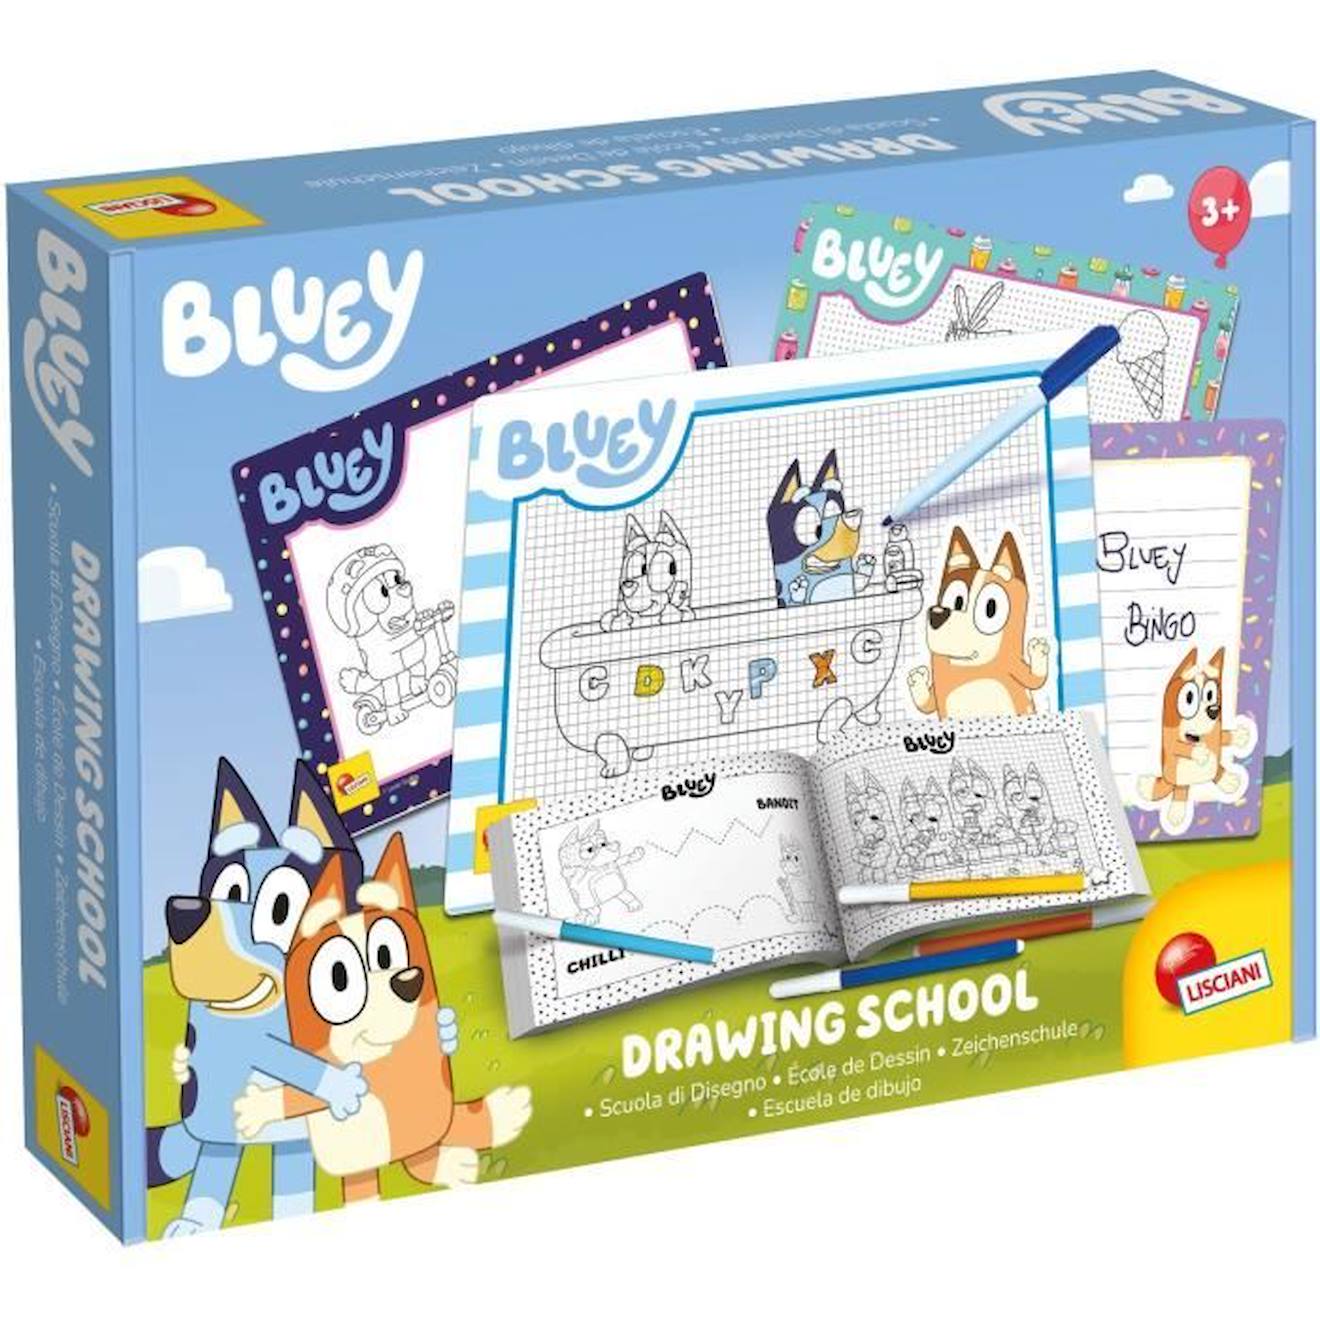 Ecole De Dessin - Bluey Drawing School - Kit Complet Pour Apprendre À Dessiner - Lisciani Blanc